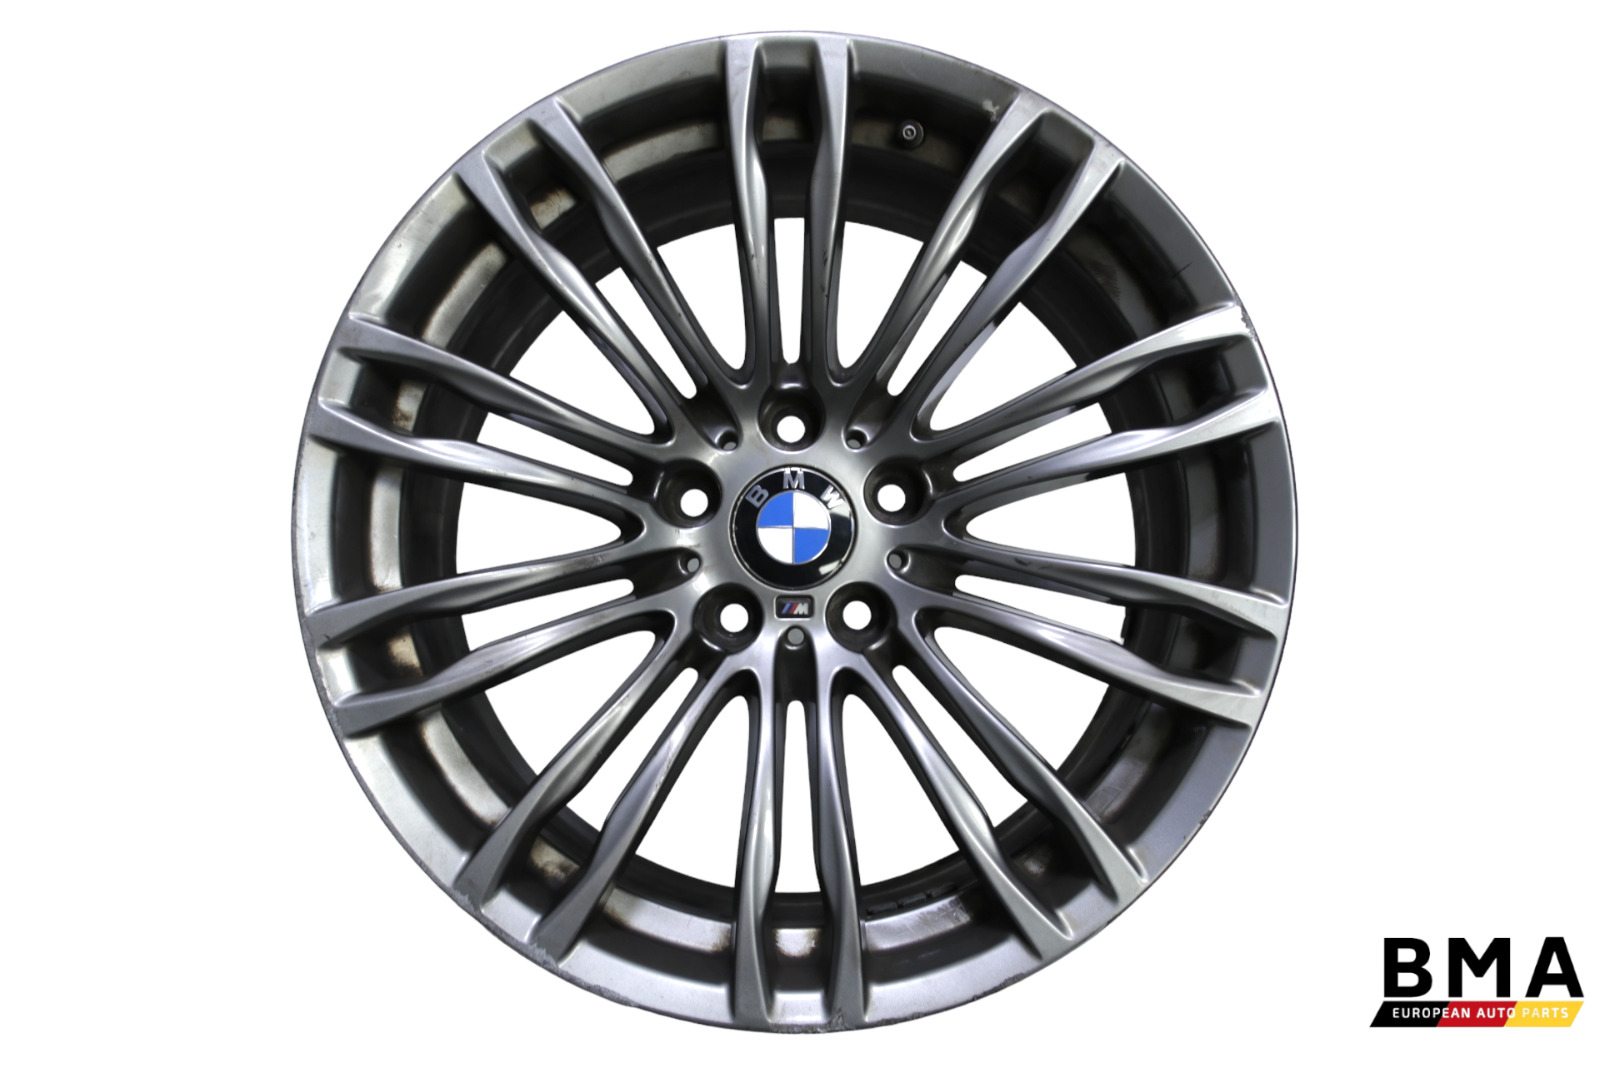 BMW M5 F10 19 Inch 19 x 9 345M Original Wheel Rim 2013 - 2016 Oem